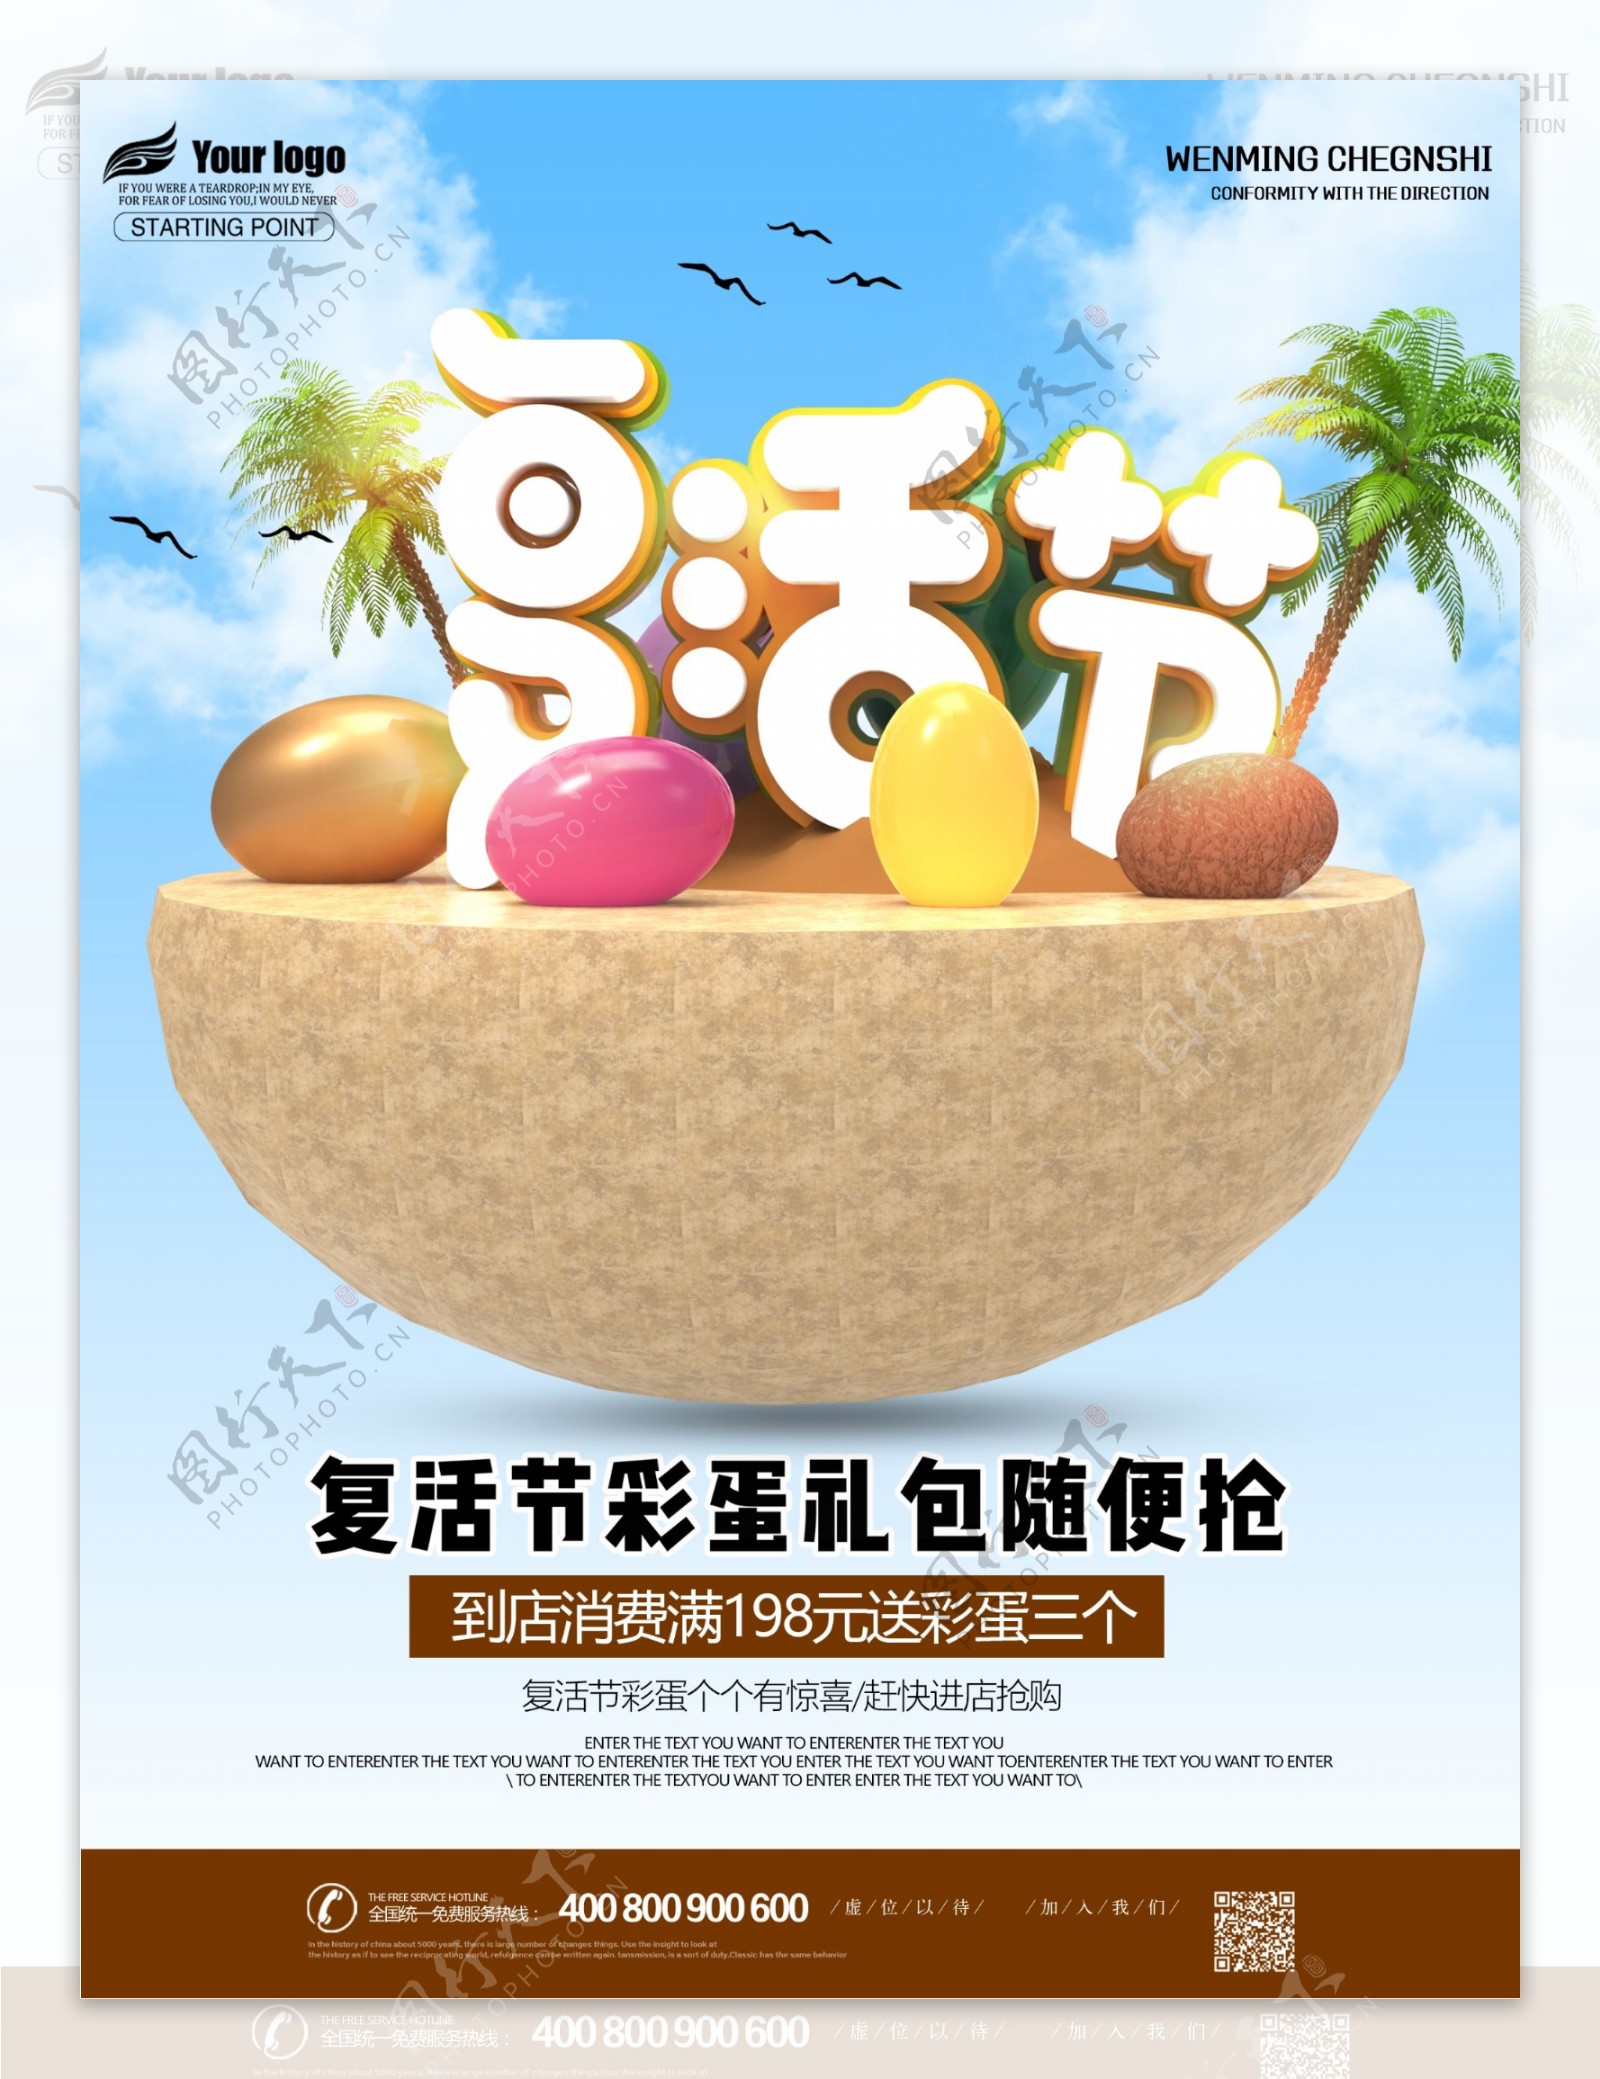 复活节彩蛋商场促销优惠海报